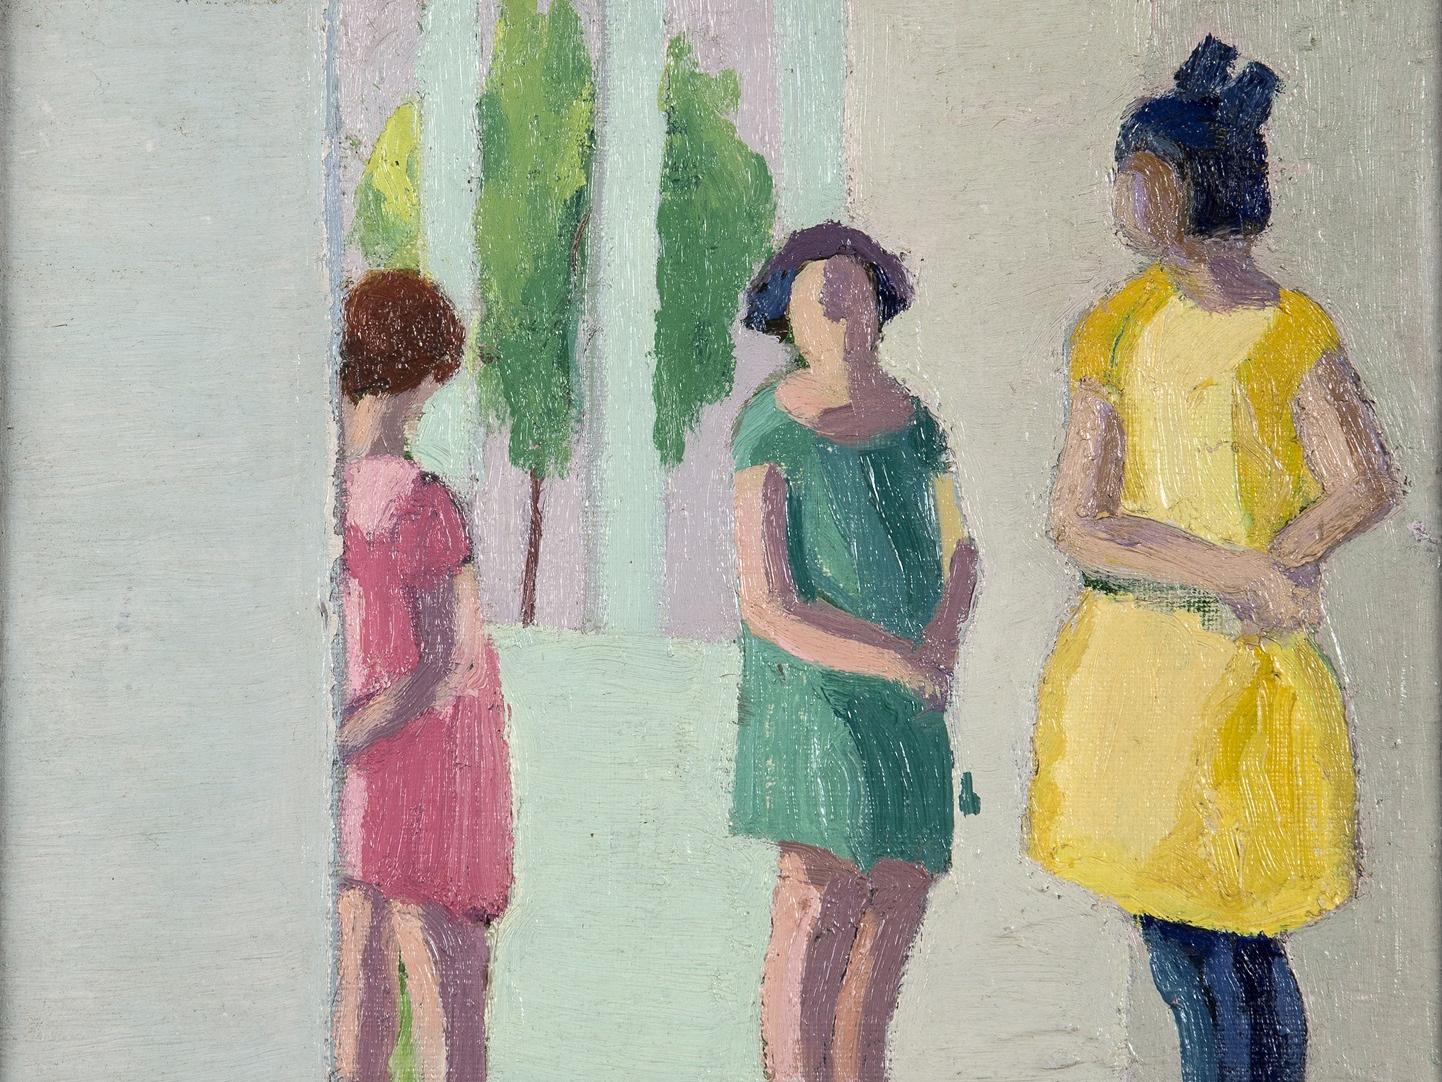 Obra que representa a tres niñas de pie, con vestidos